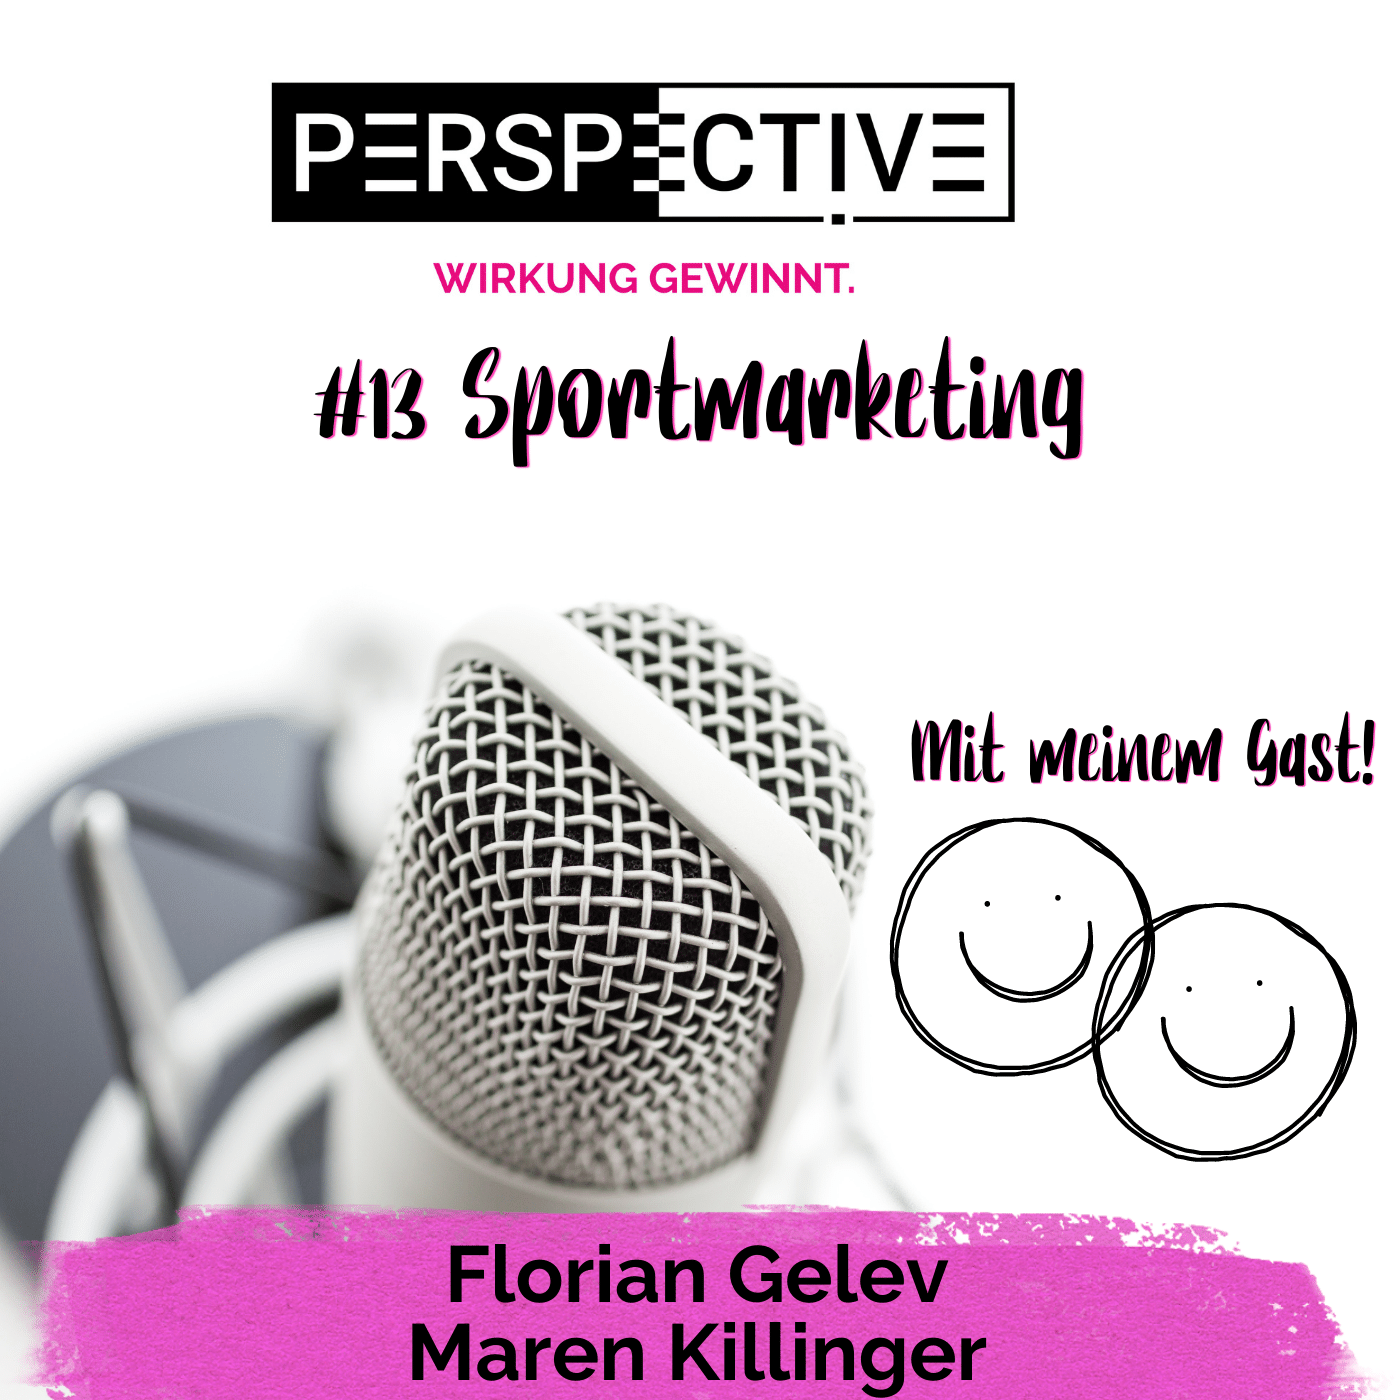 Podcast mit meinem Gast meinen Gast Florian Gelev zu den Themen Wirkung, Emotionen und Körpersprache.